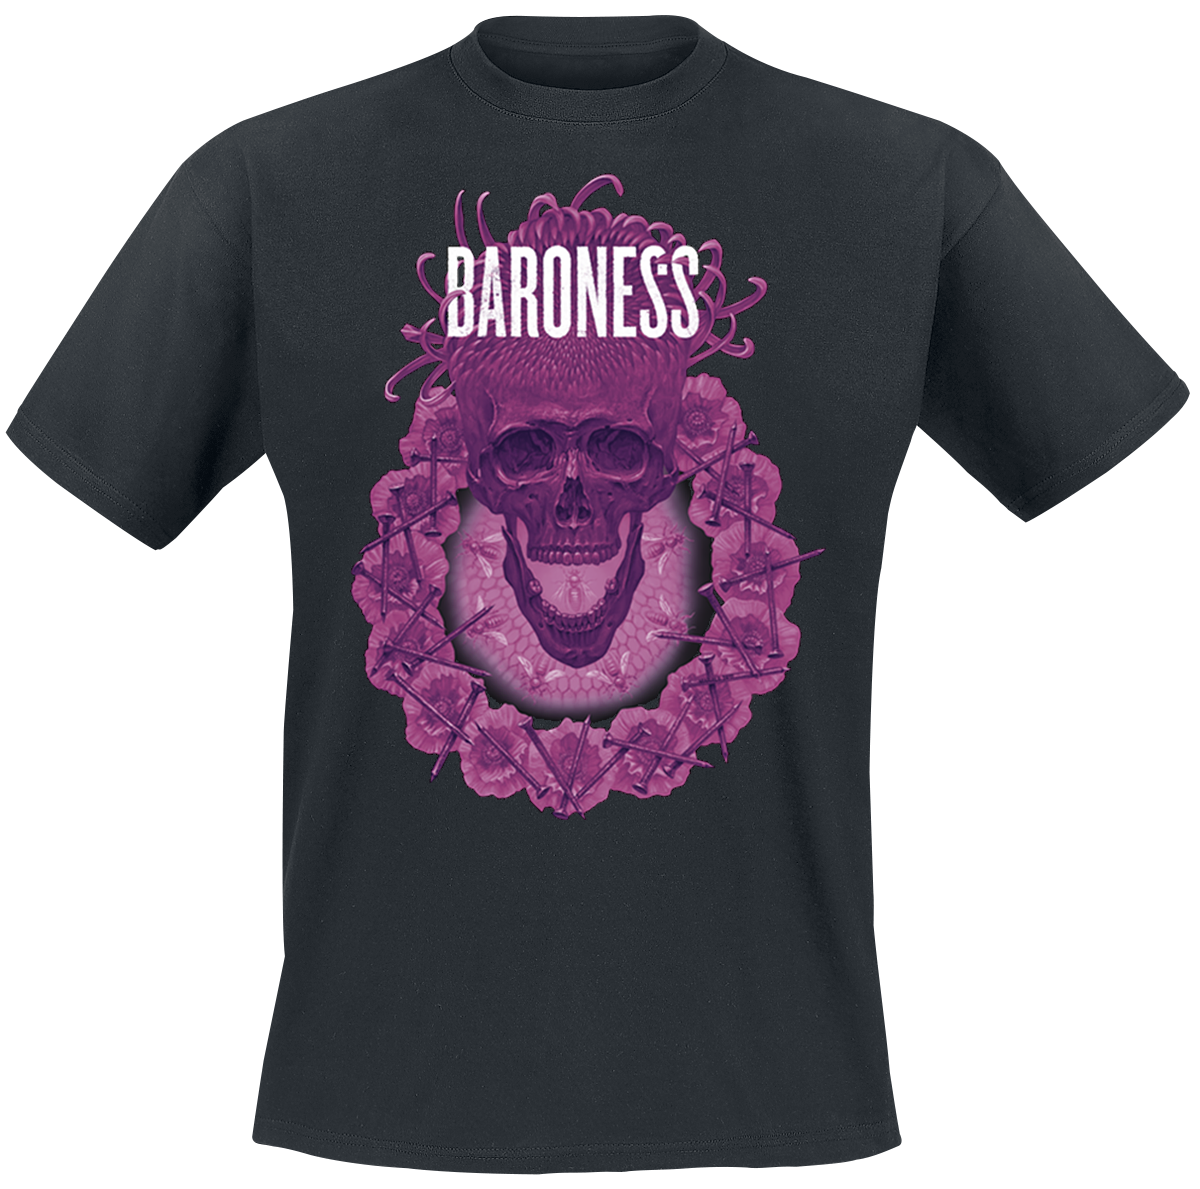 Baroness - Marald Chrysanthemum - T-Shirt - black image